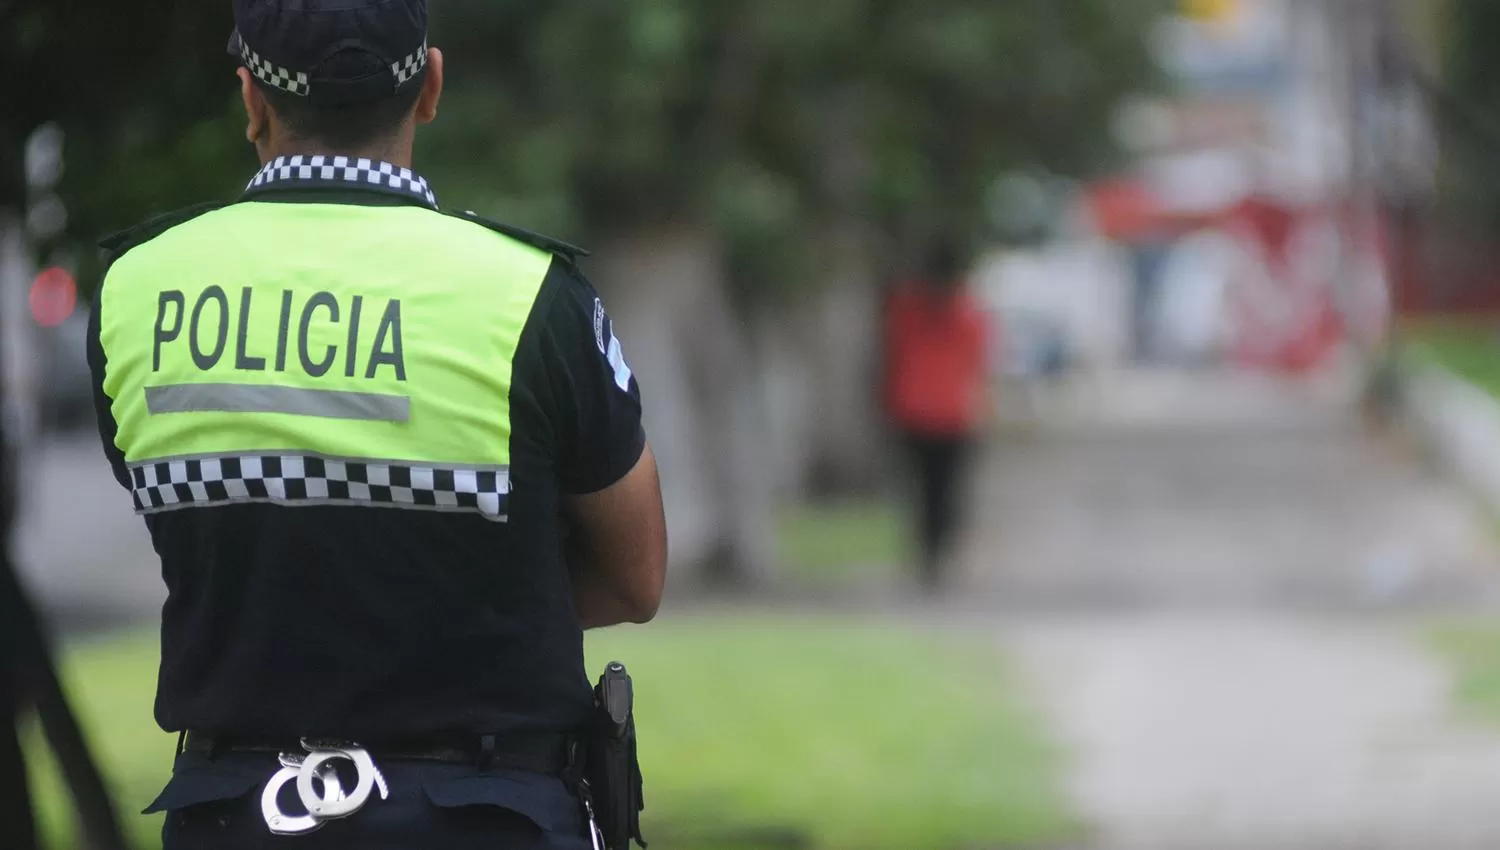 El Gobierno busca frenar el delito en los barrios más críticos de Tucumán